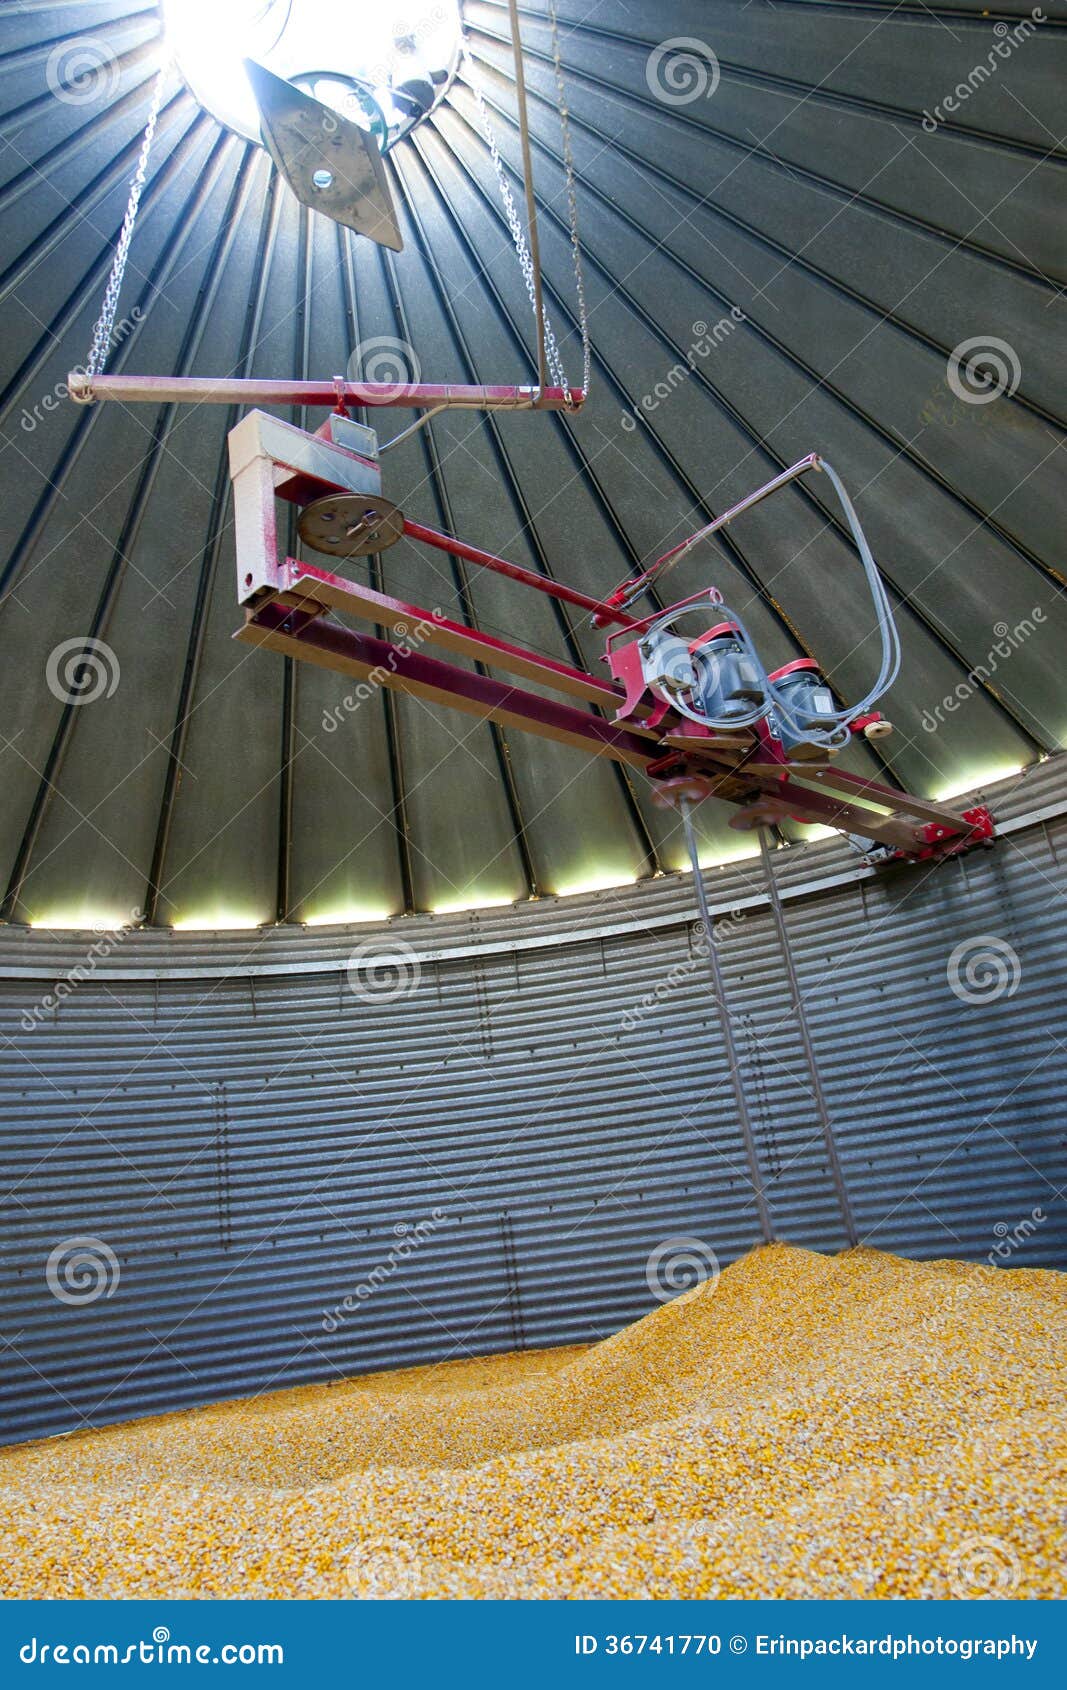 inside a grain silo